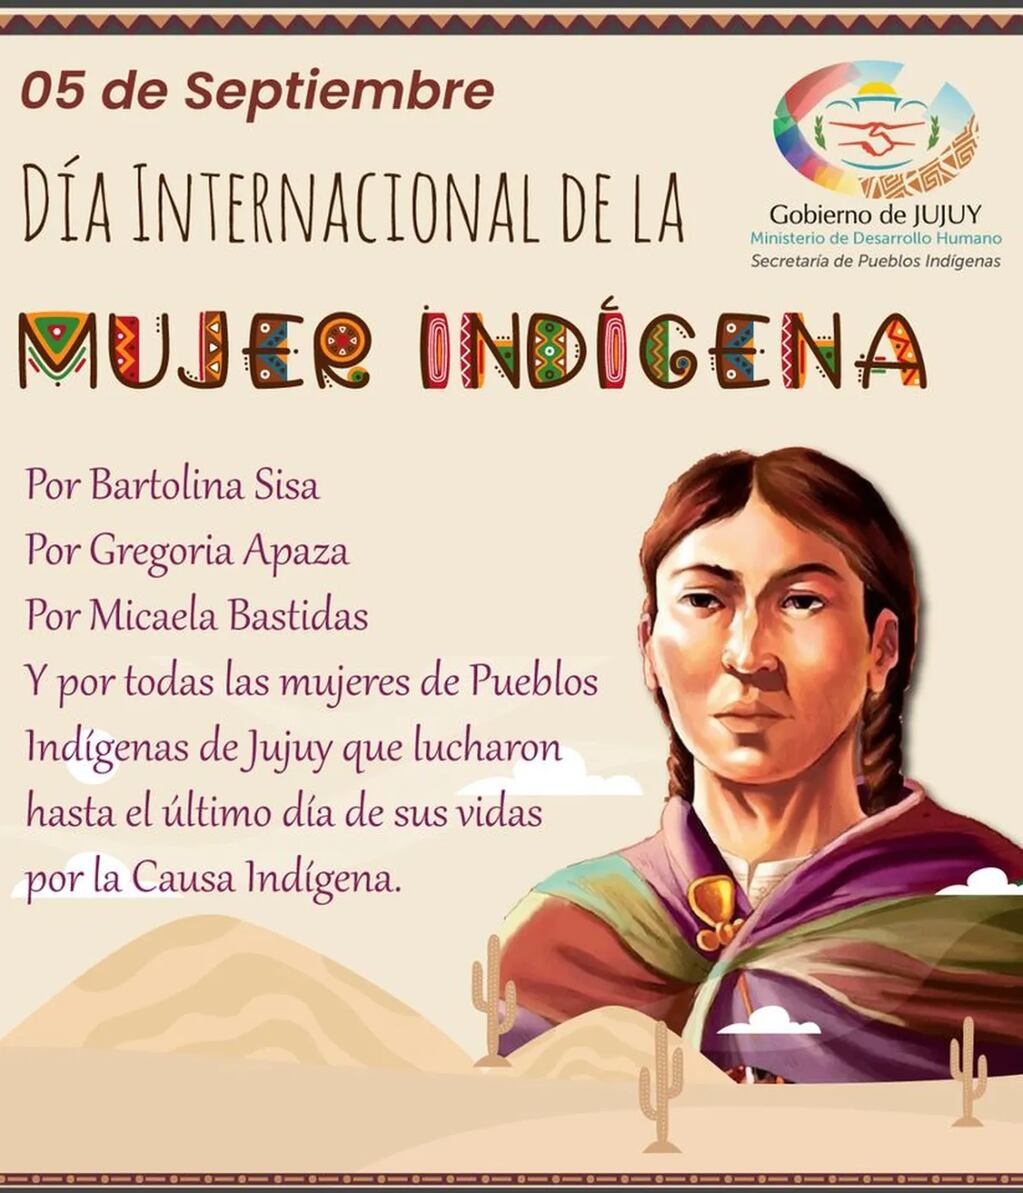 La Secretaría de Pueblos Indígenas de Jujuy evocó con una pieza gráfica el Día Internacional de la Mujer Indígena.